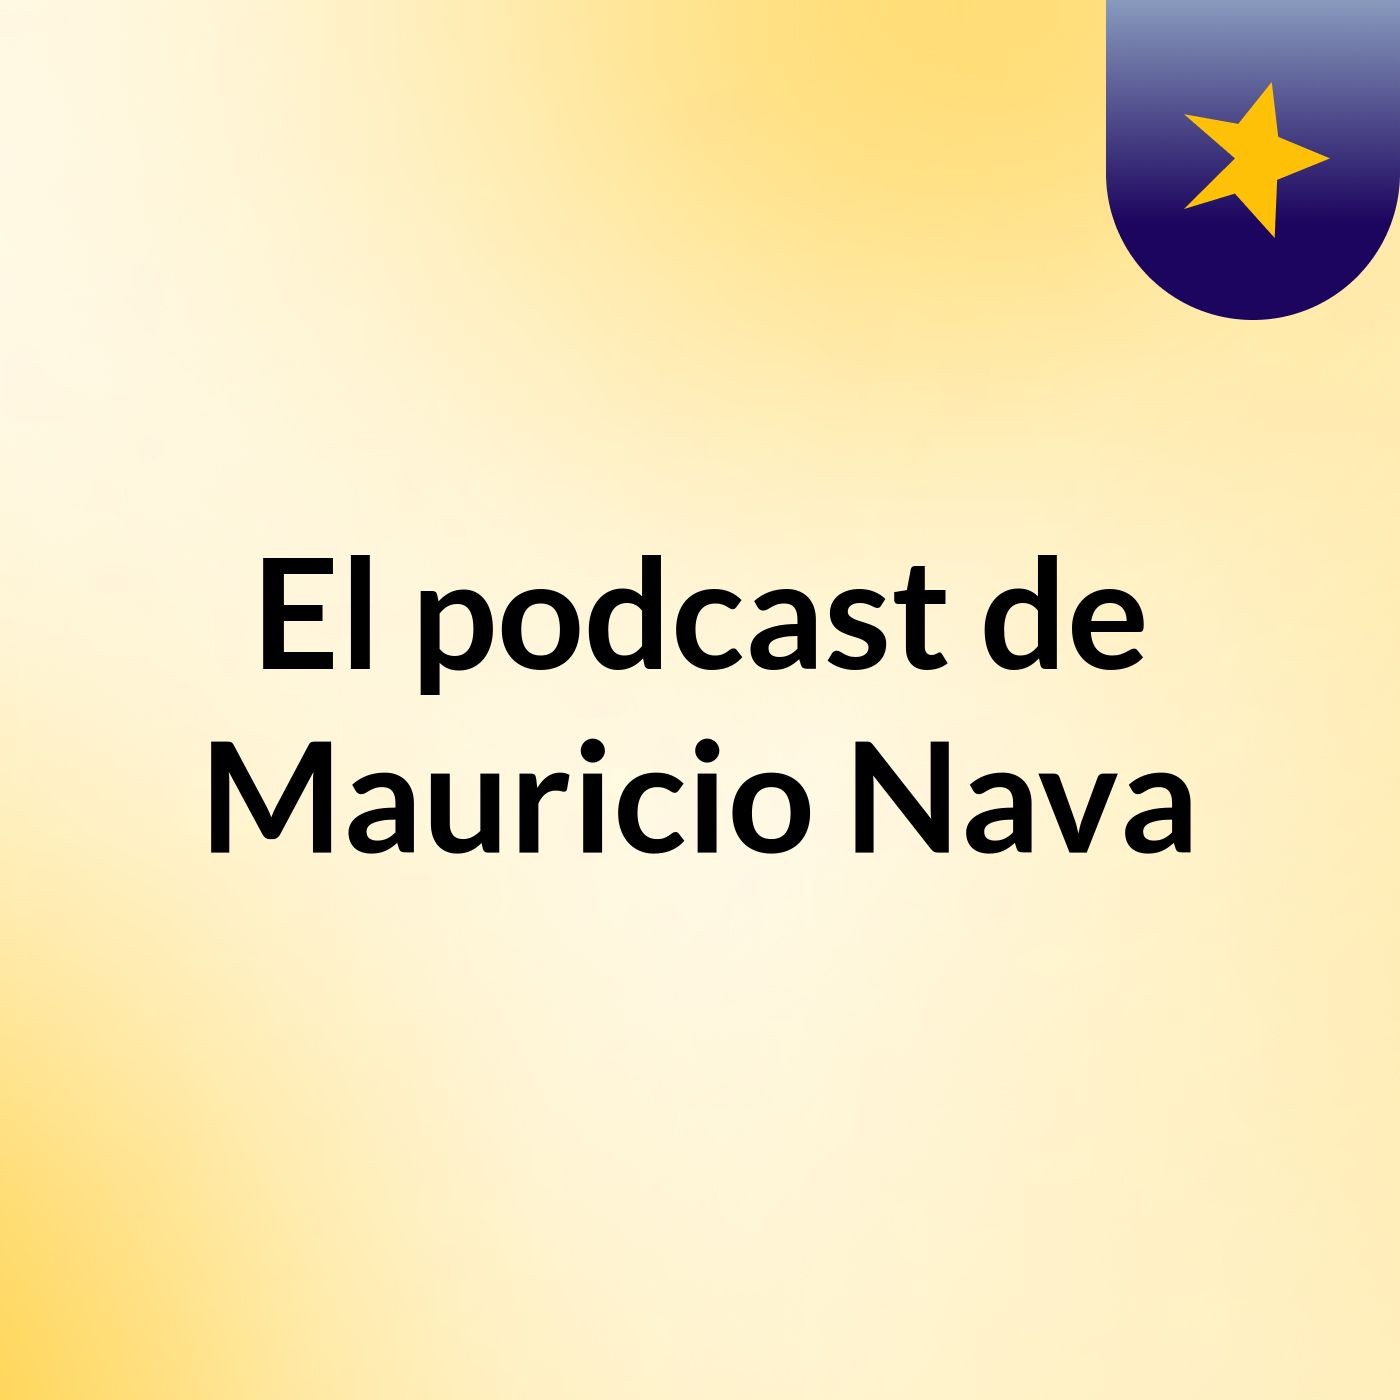 El podcast de Mauricio Nava